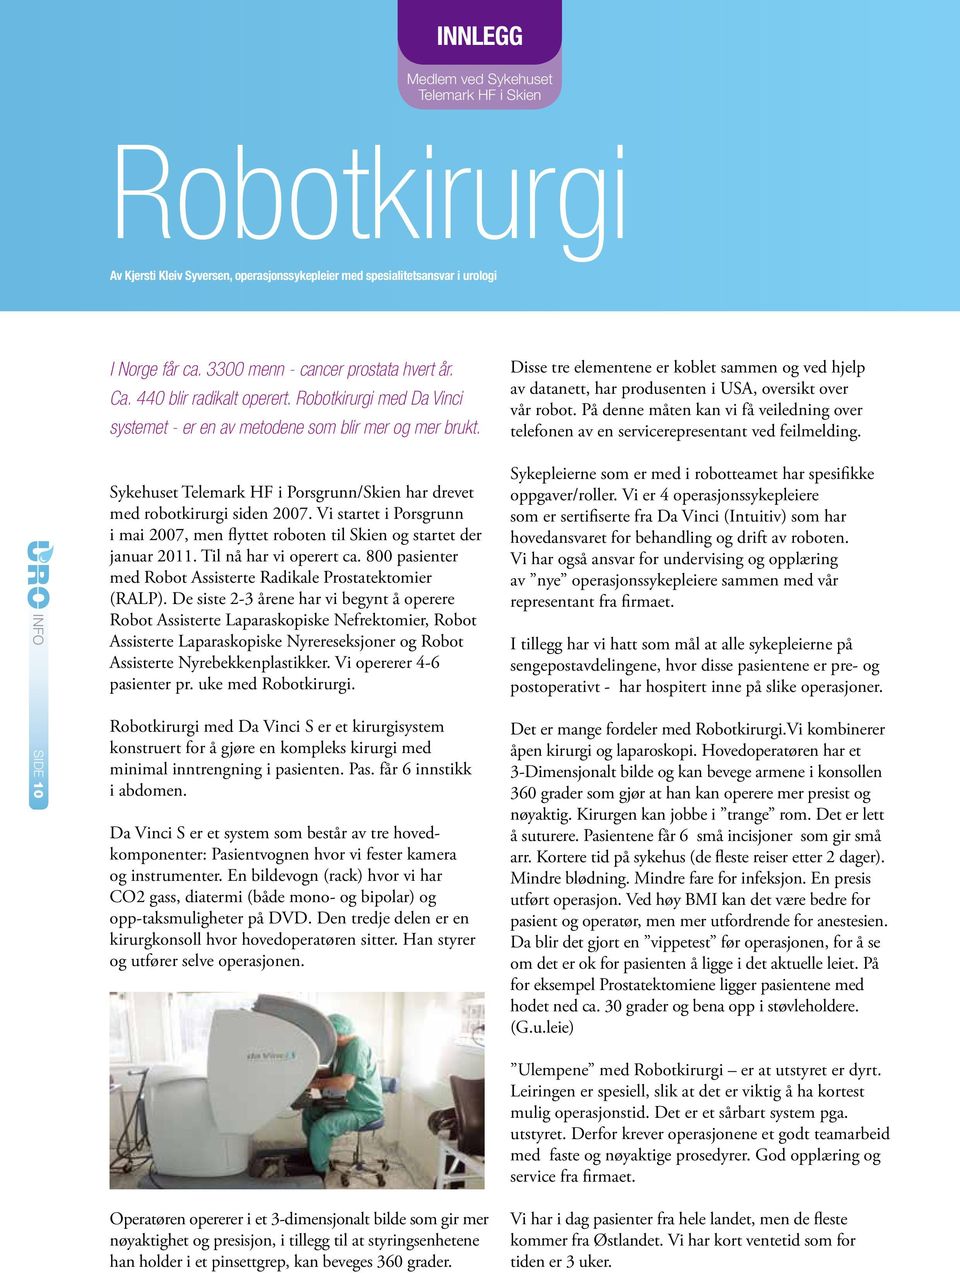 Vi startet i Porsgrunn i mai 2007, men flyttet roboten til Skien og startet der januar 2011. Til nå har vi operert ca. 800 pasienter med Robot Assisterte Radikale Prostatektomier (RALP).